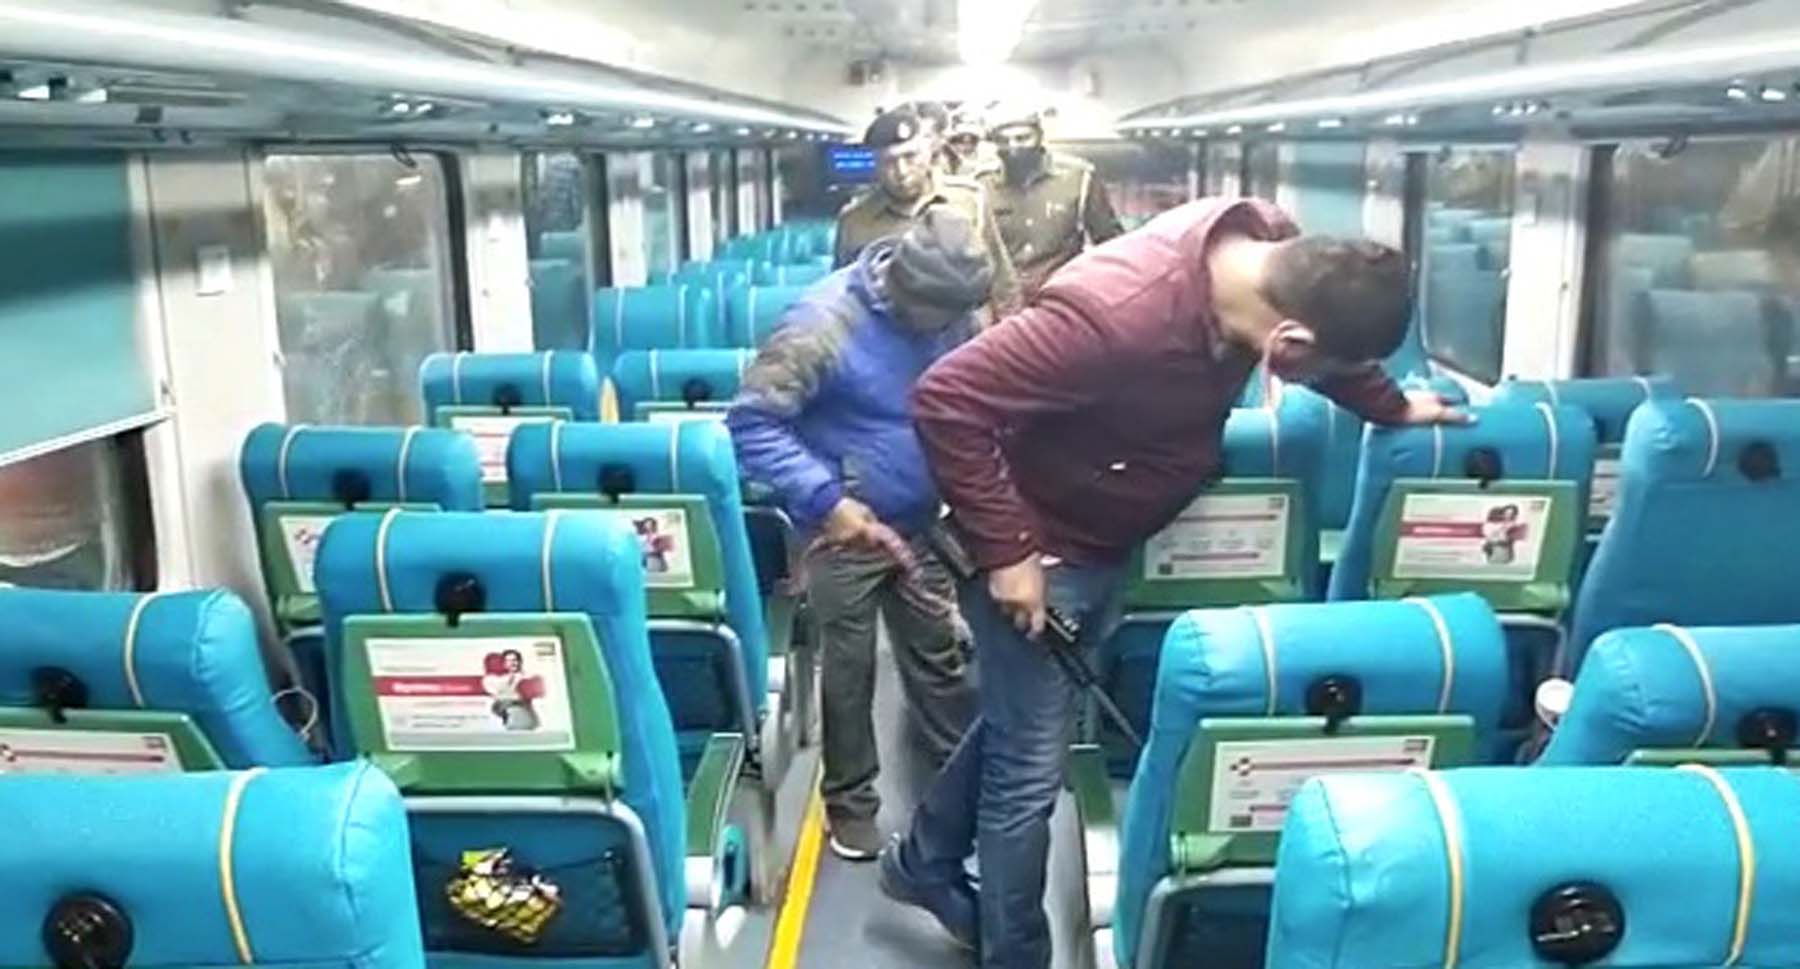 दिल्ली-अजमेर एक्सप्रेस ट्रेन में बम की सूचना पर हड़कंप, दो घंटे तक रहा अफरा-तफरी का माहौल